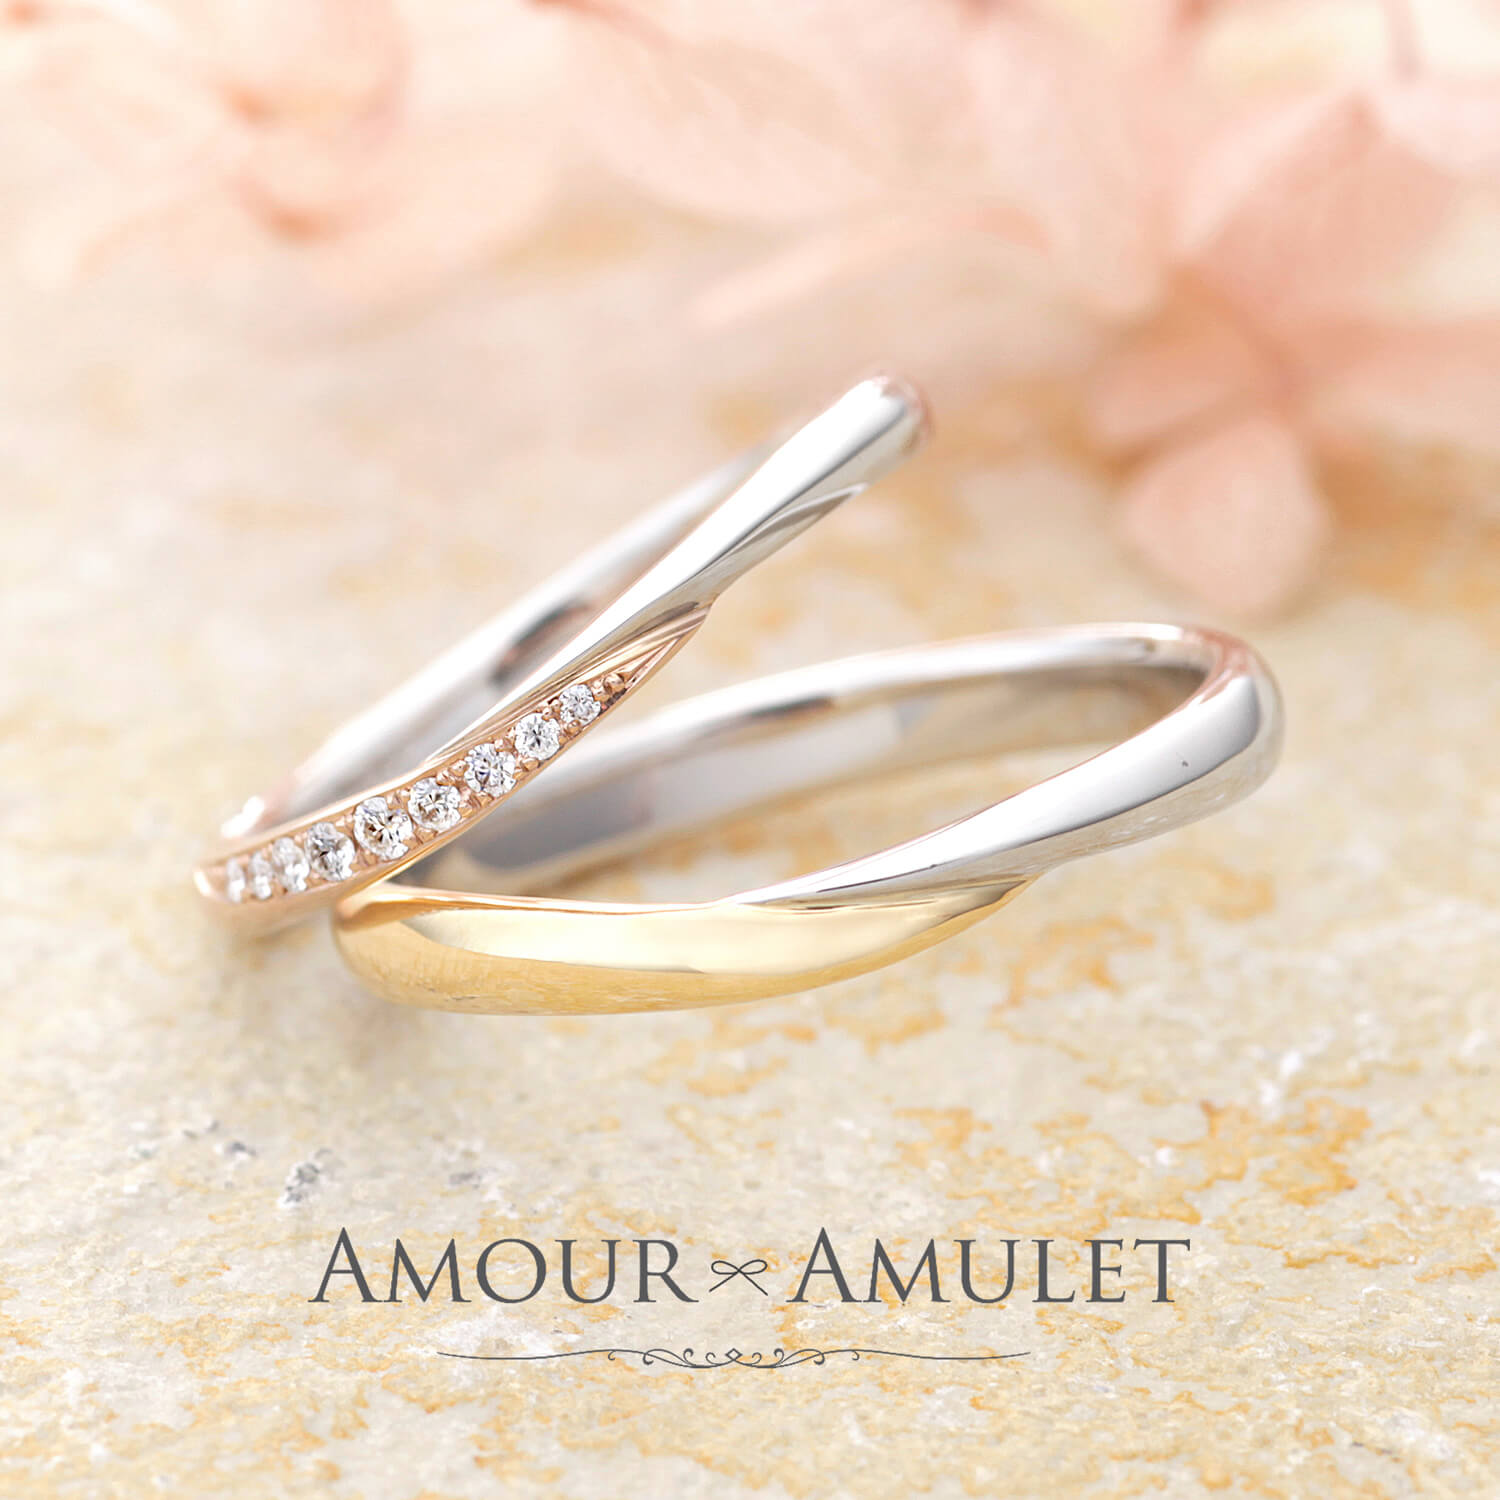 AMOURAMULETアムールアミュレットの結婚指輪LUMIEREルミエール